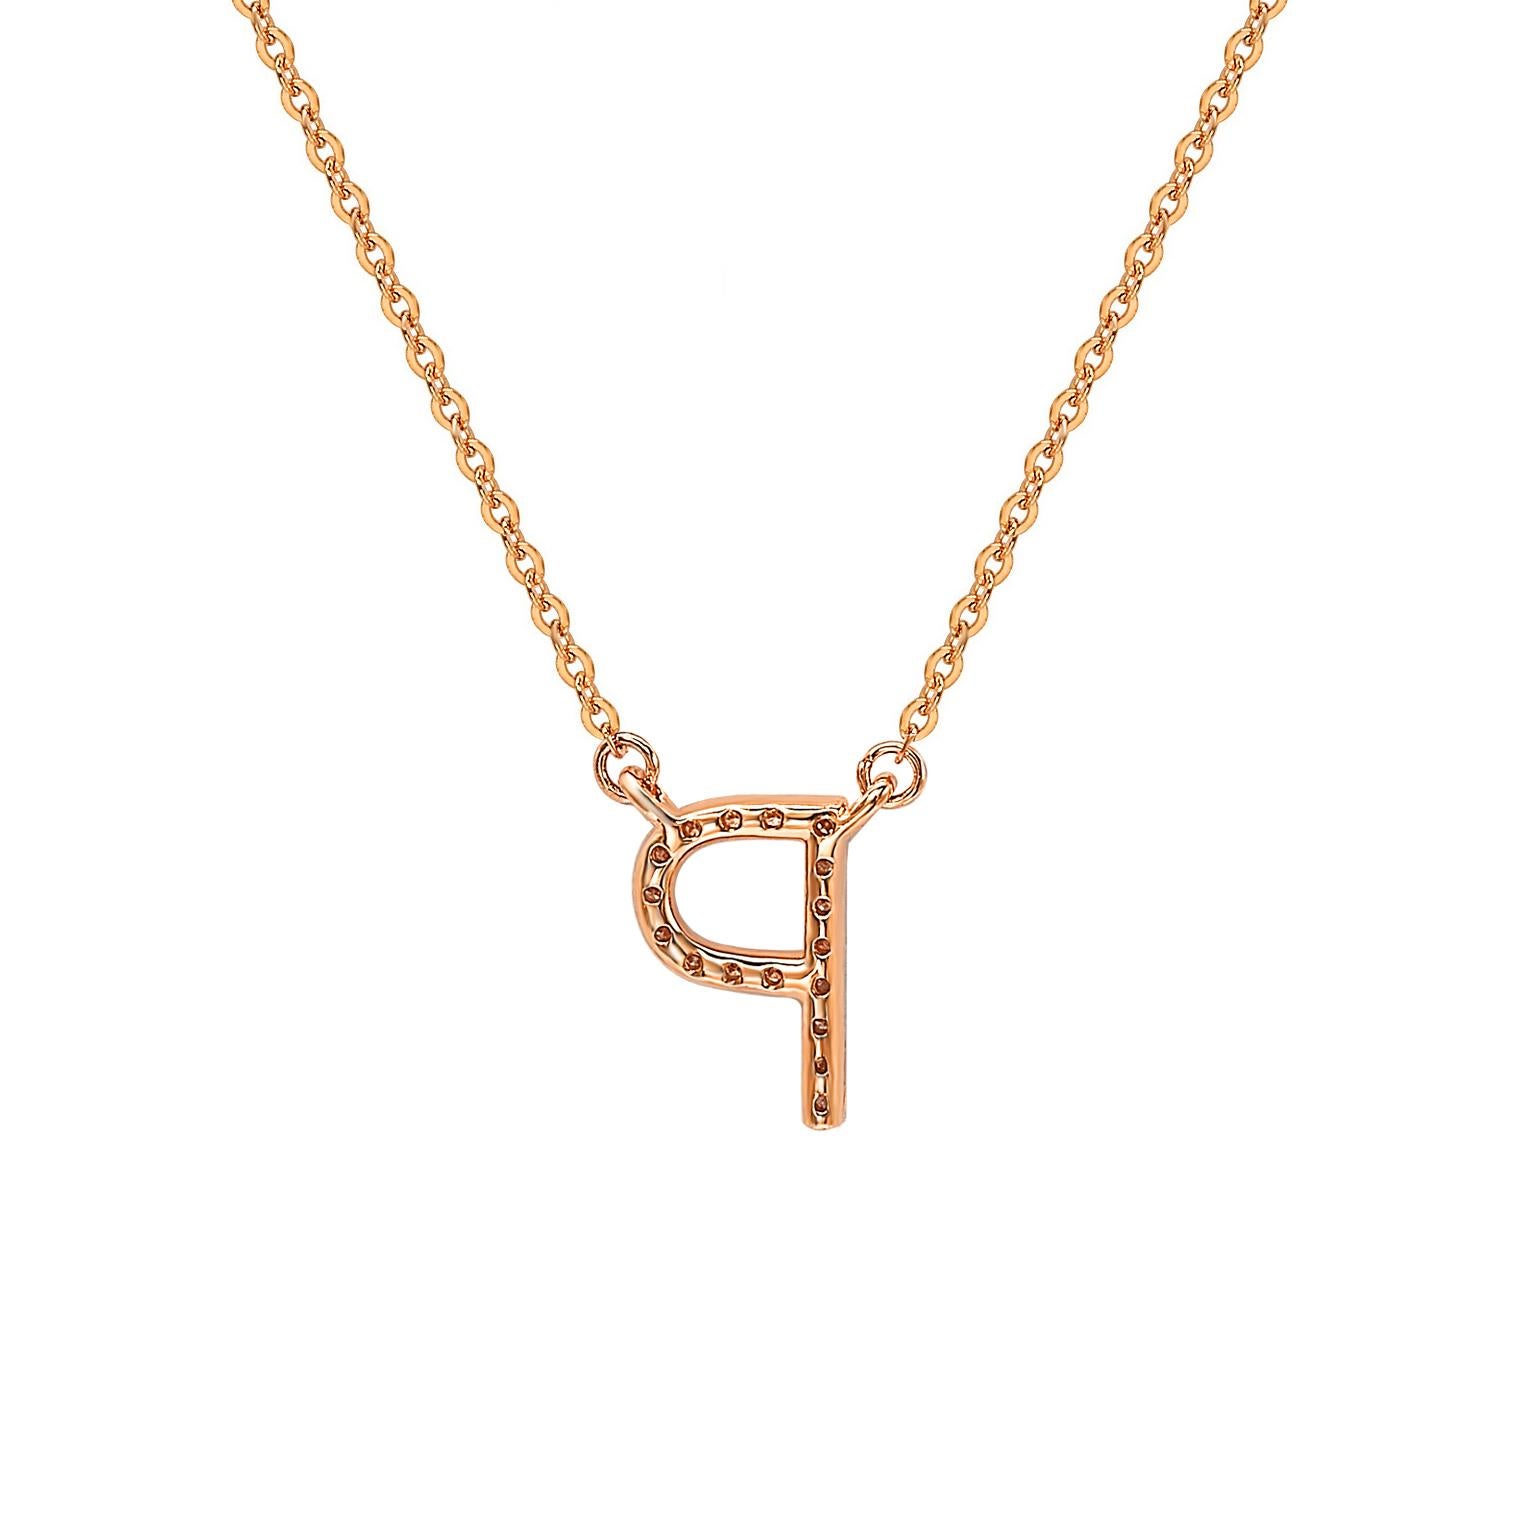 Cet époustouflant collier de lettres personnalisé de Suzy Levian est orné de diamants naturels, sertis à la main dans de l'or rose 14 carats. C'est le cadeau individuel parfait pour faire savoir à quelqu'un de spécial que vous pensez à lui. Chaque